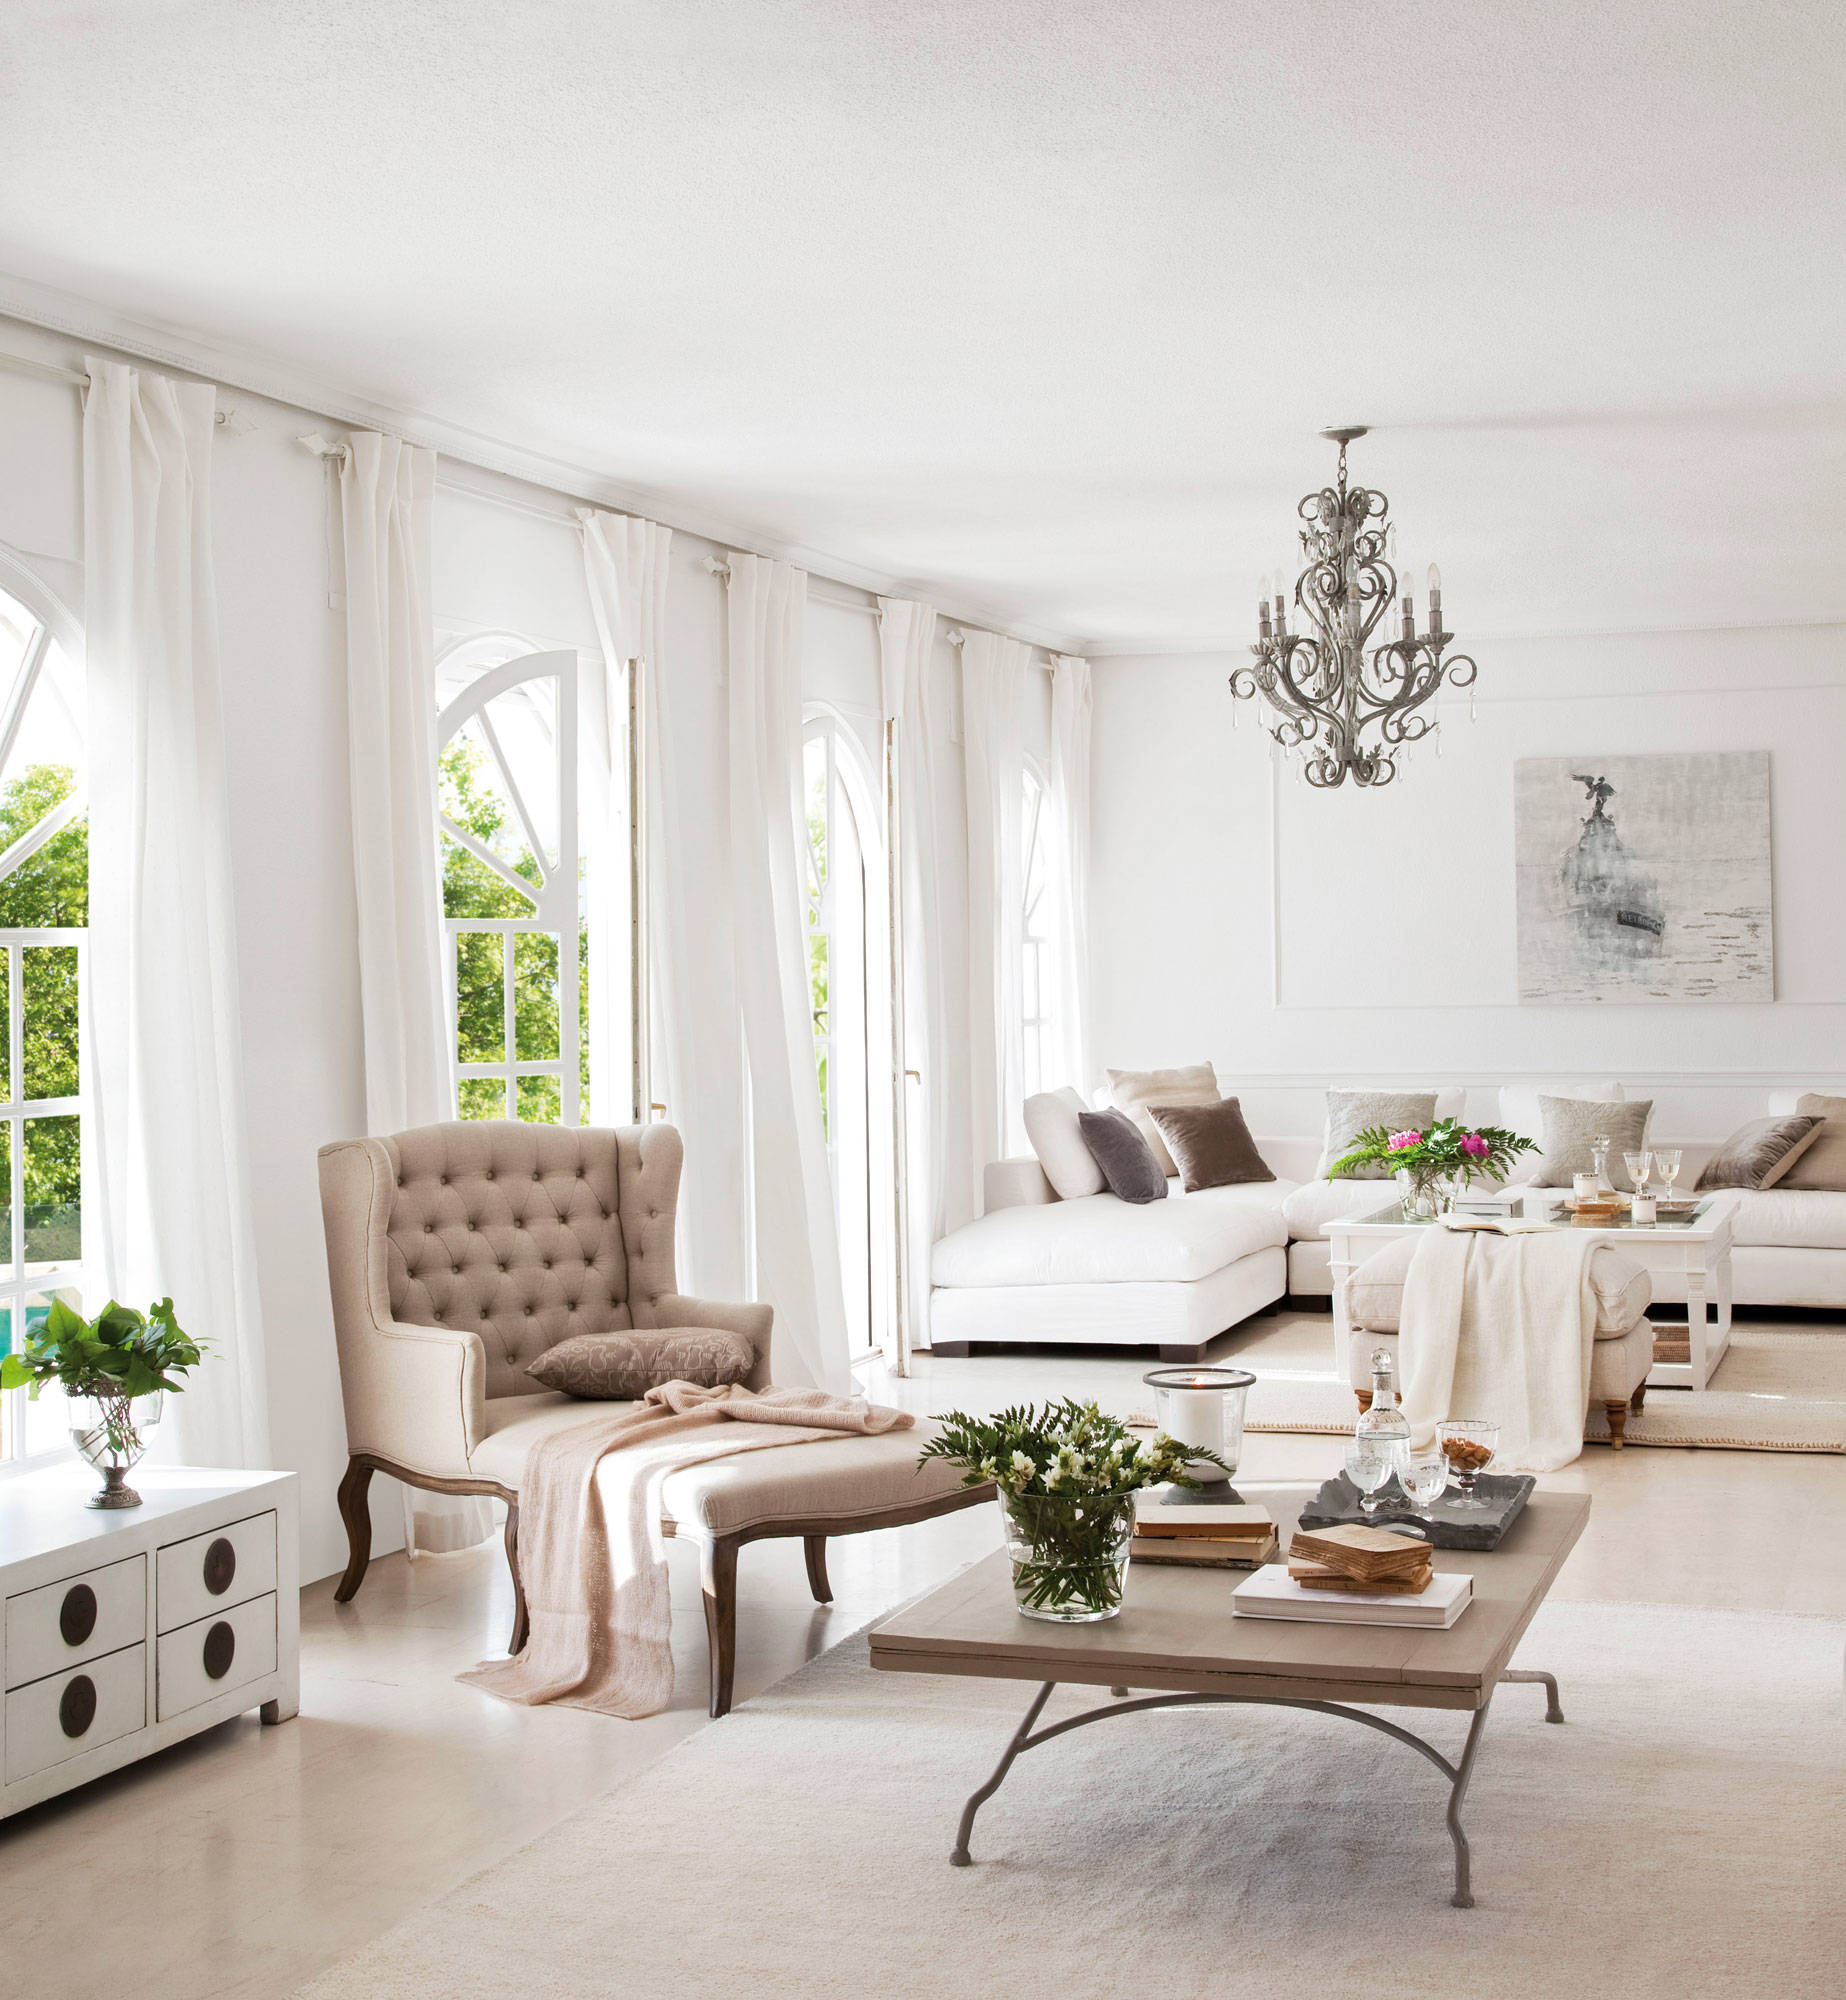 Salón blanco con sofá rinconera y chaise longue clásica gris.